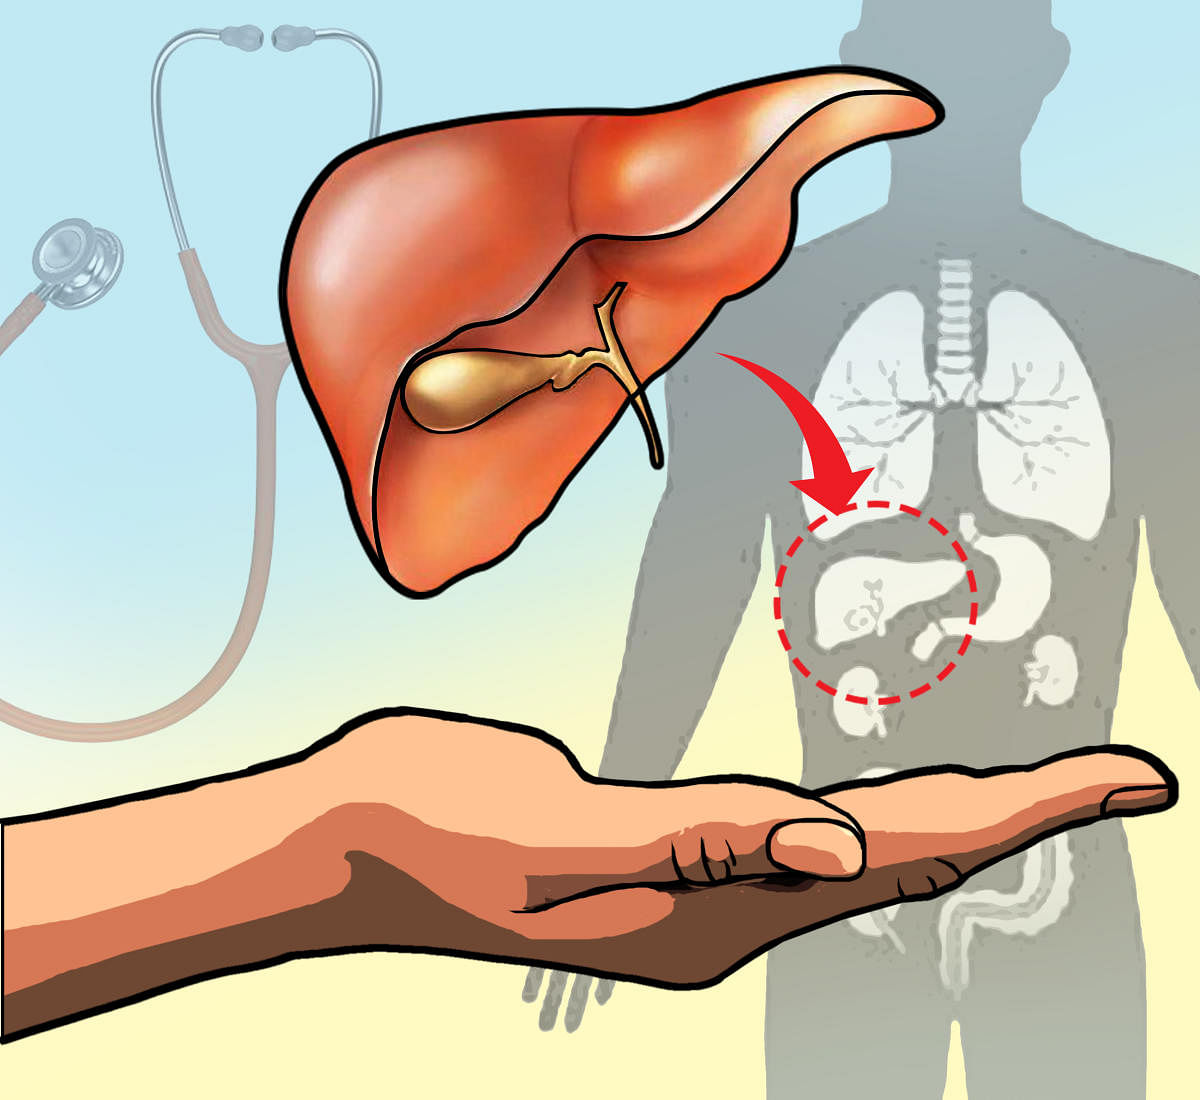 Figuring out liver transplantation gets easier